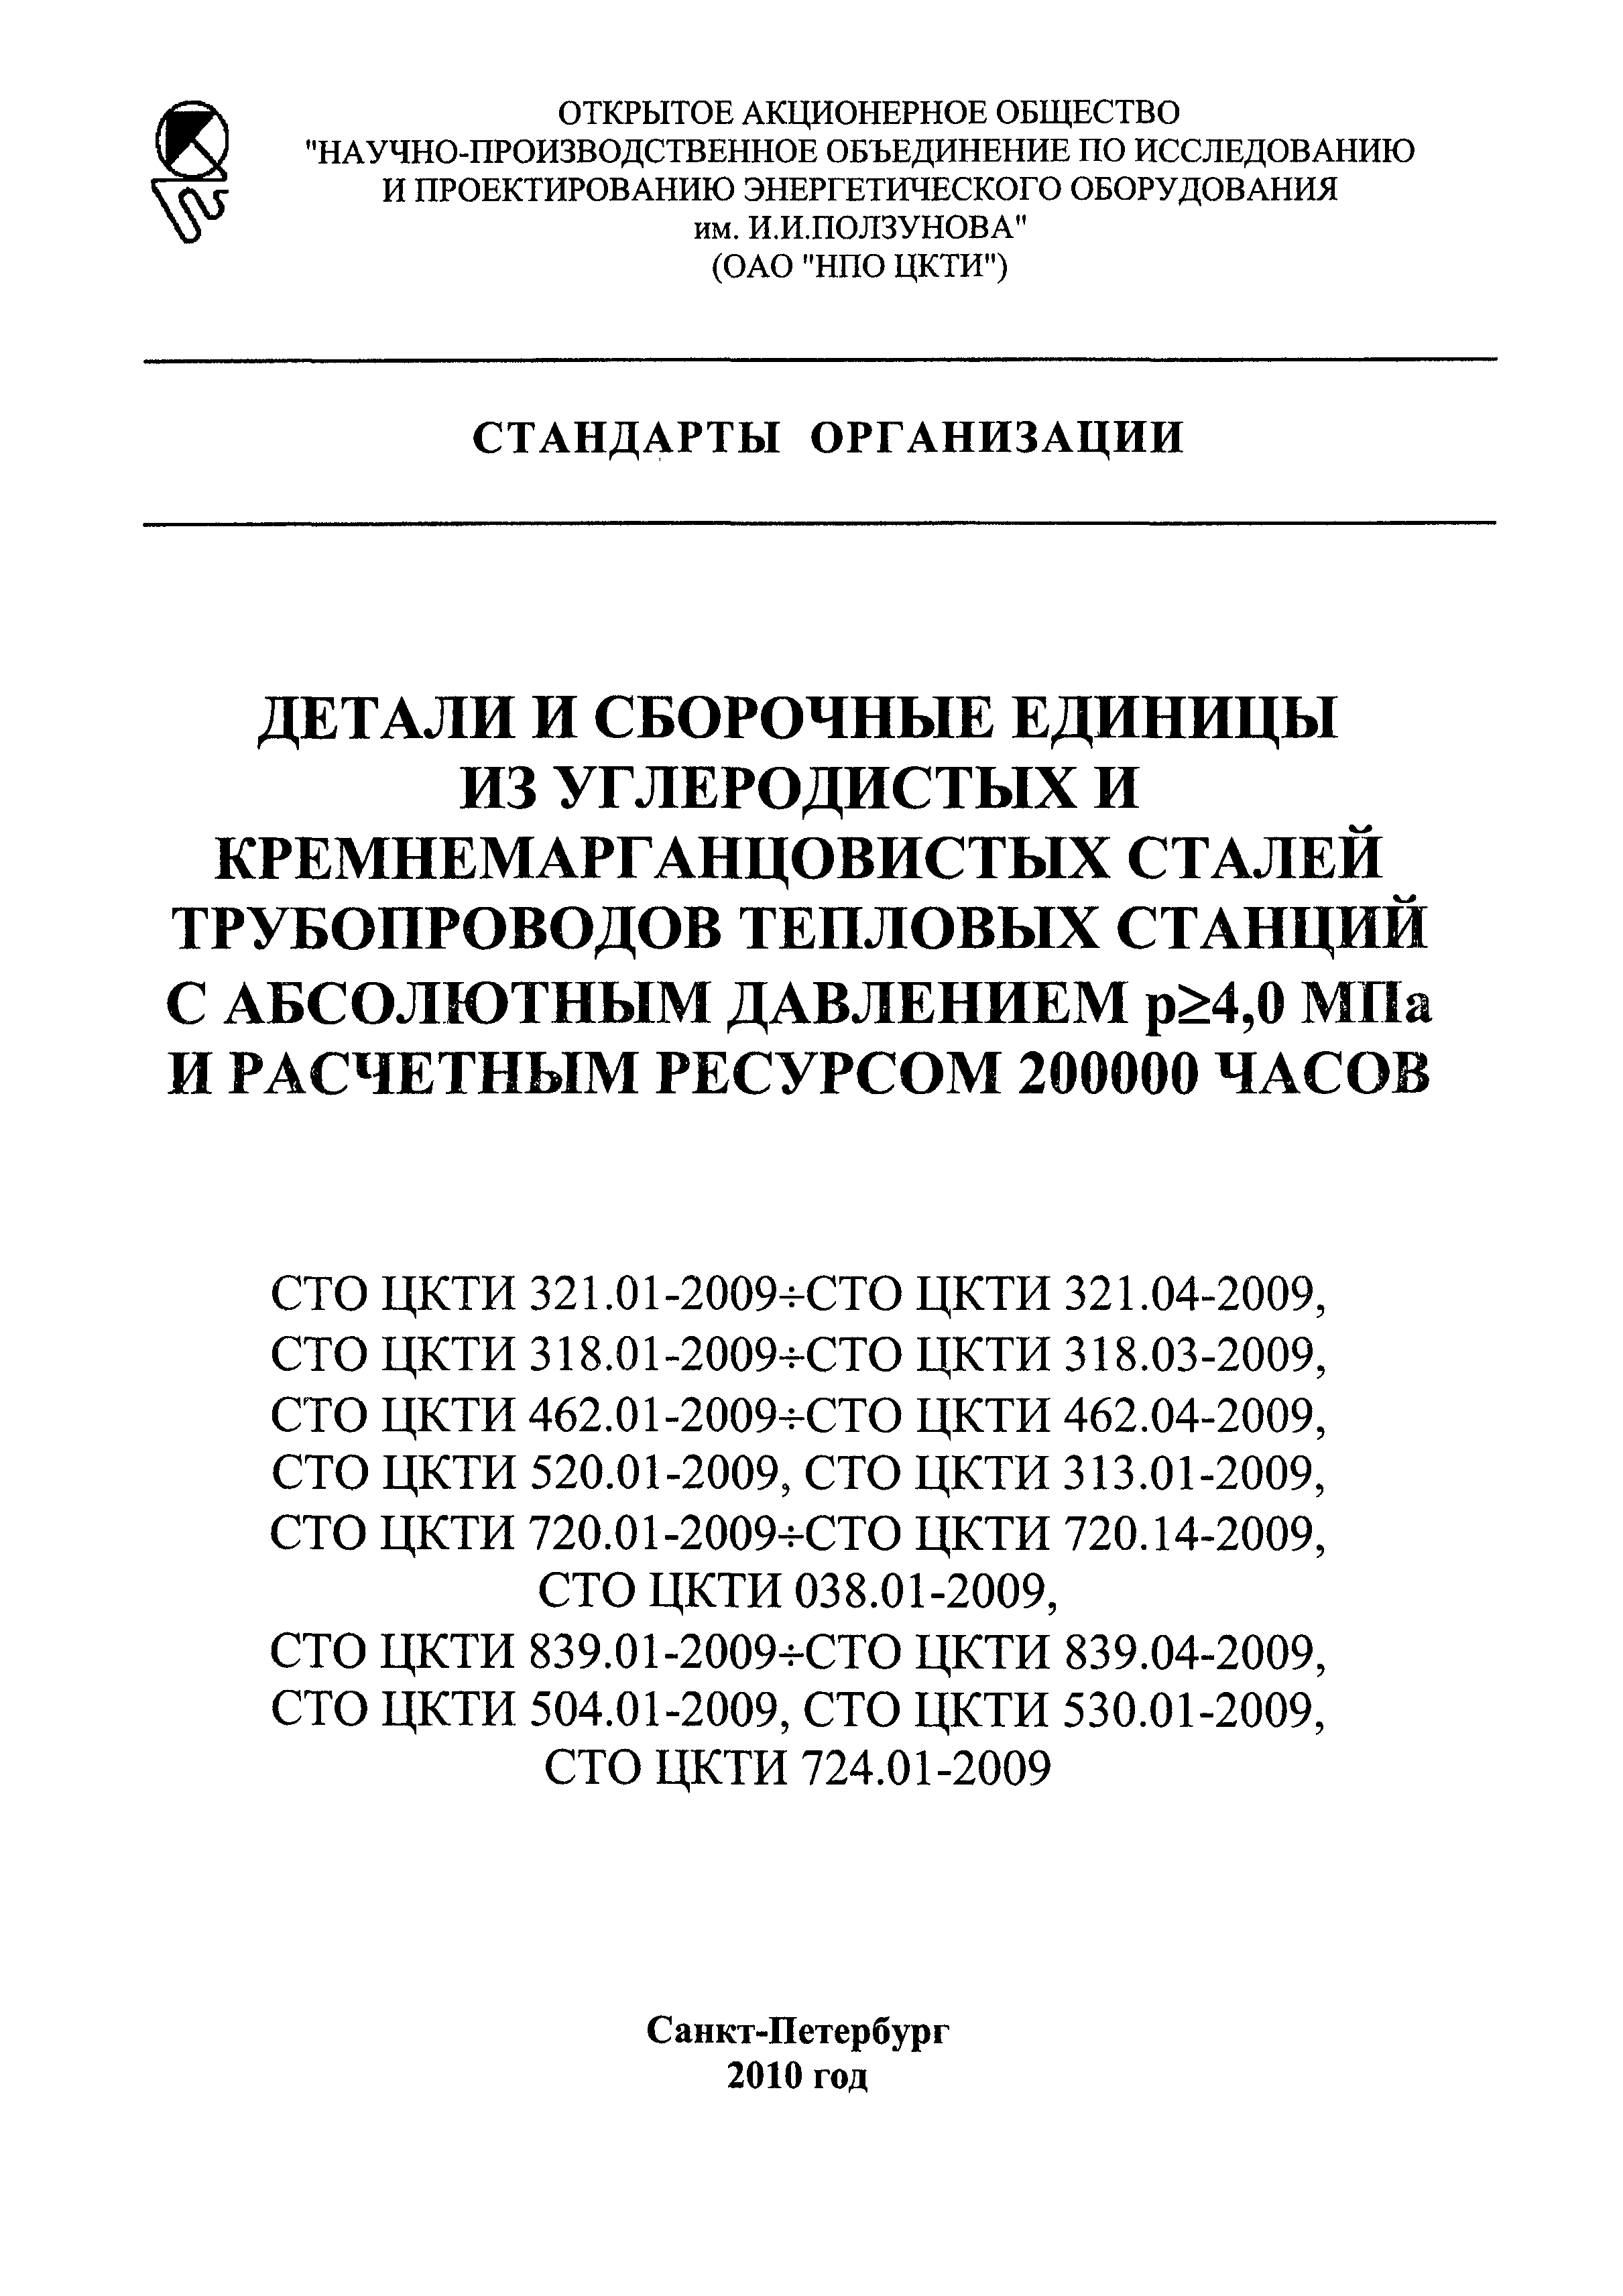 СТО ЦКТИ 038.01-2009